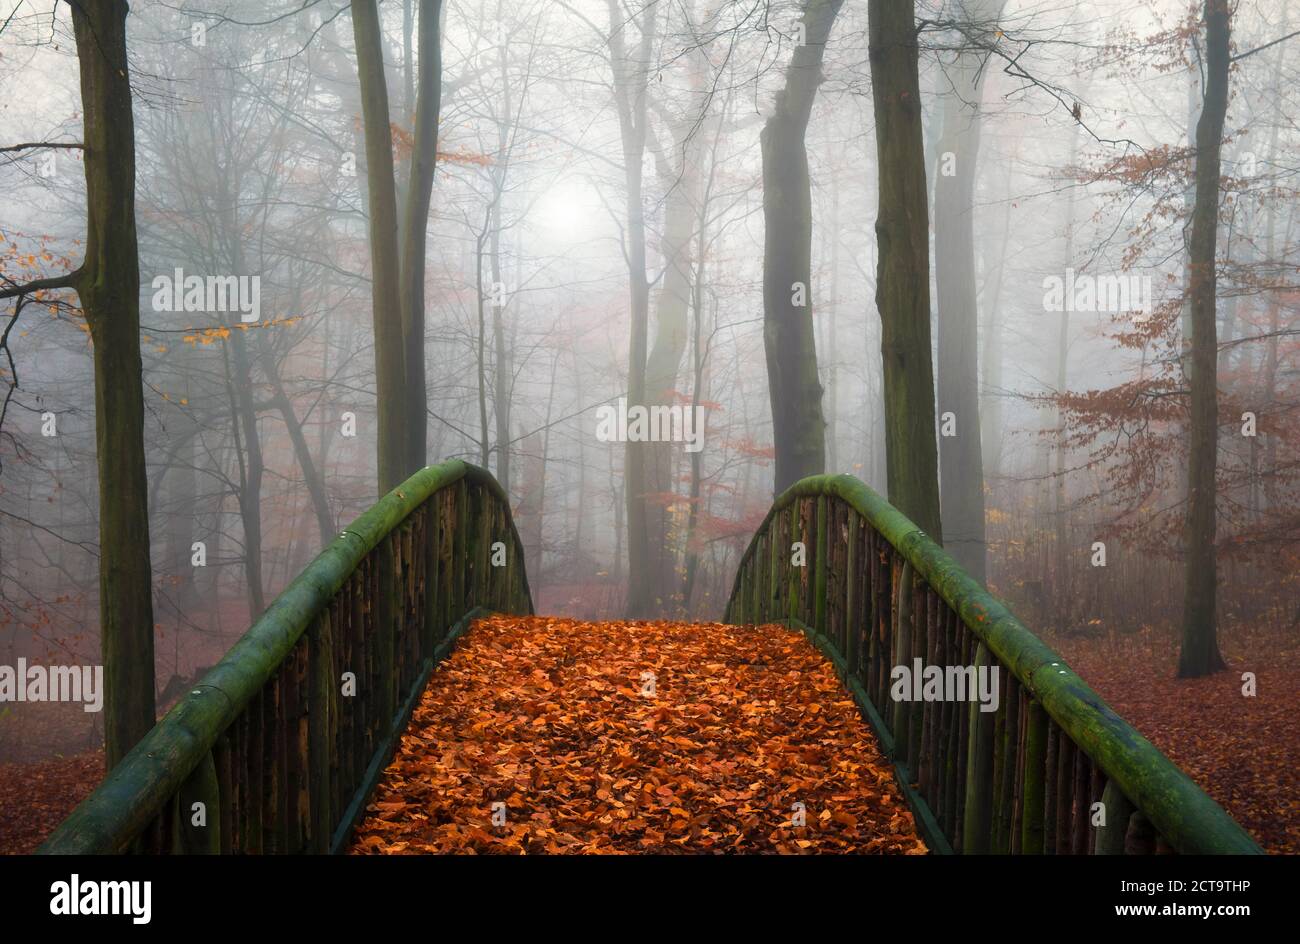 Allemagne, Hambourg, Jenischpark dans le brouillard, pont en bois recouvert de feuilles d'automne Banque D'Images